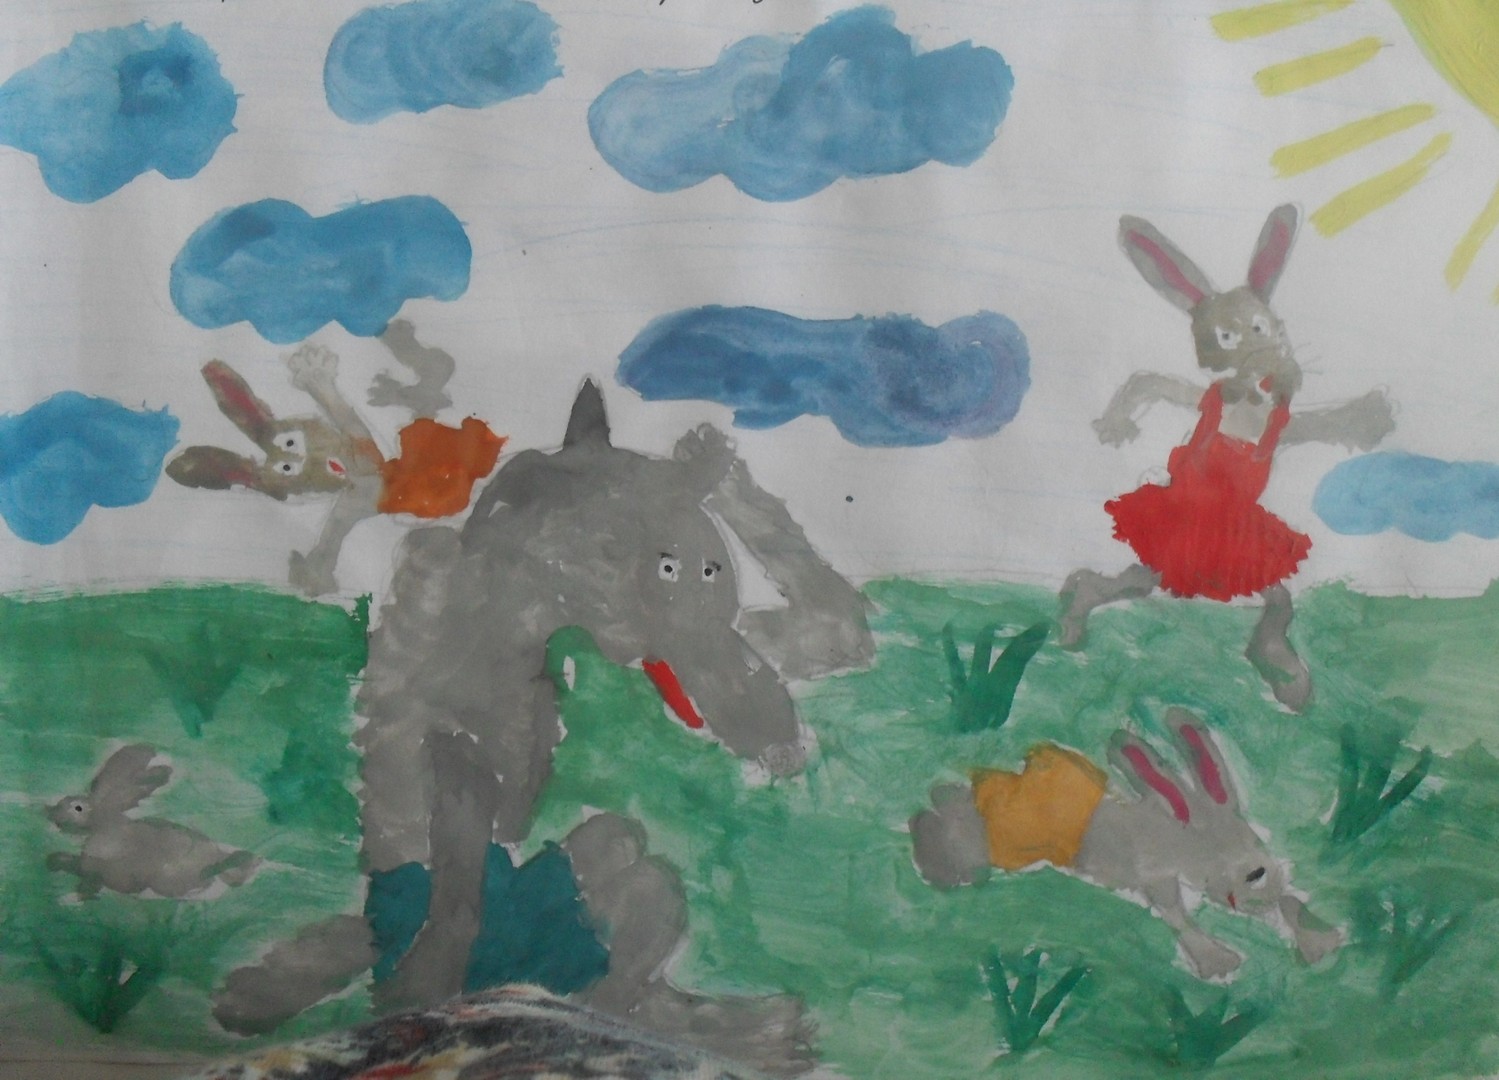 Сказка про храброго зайца рисунок